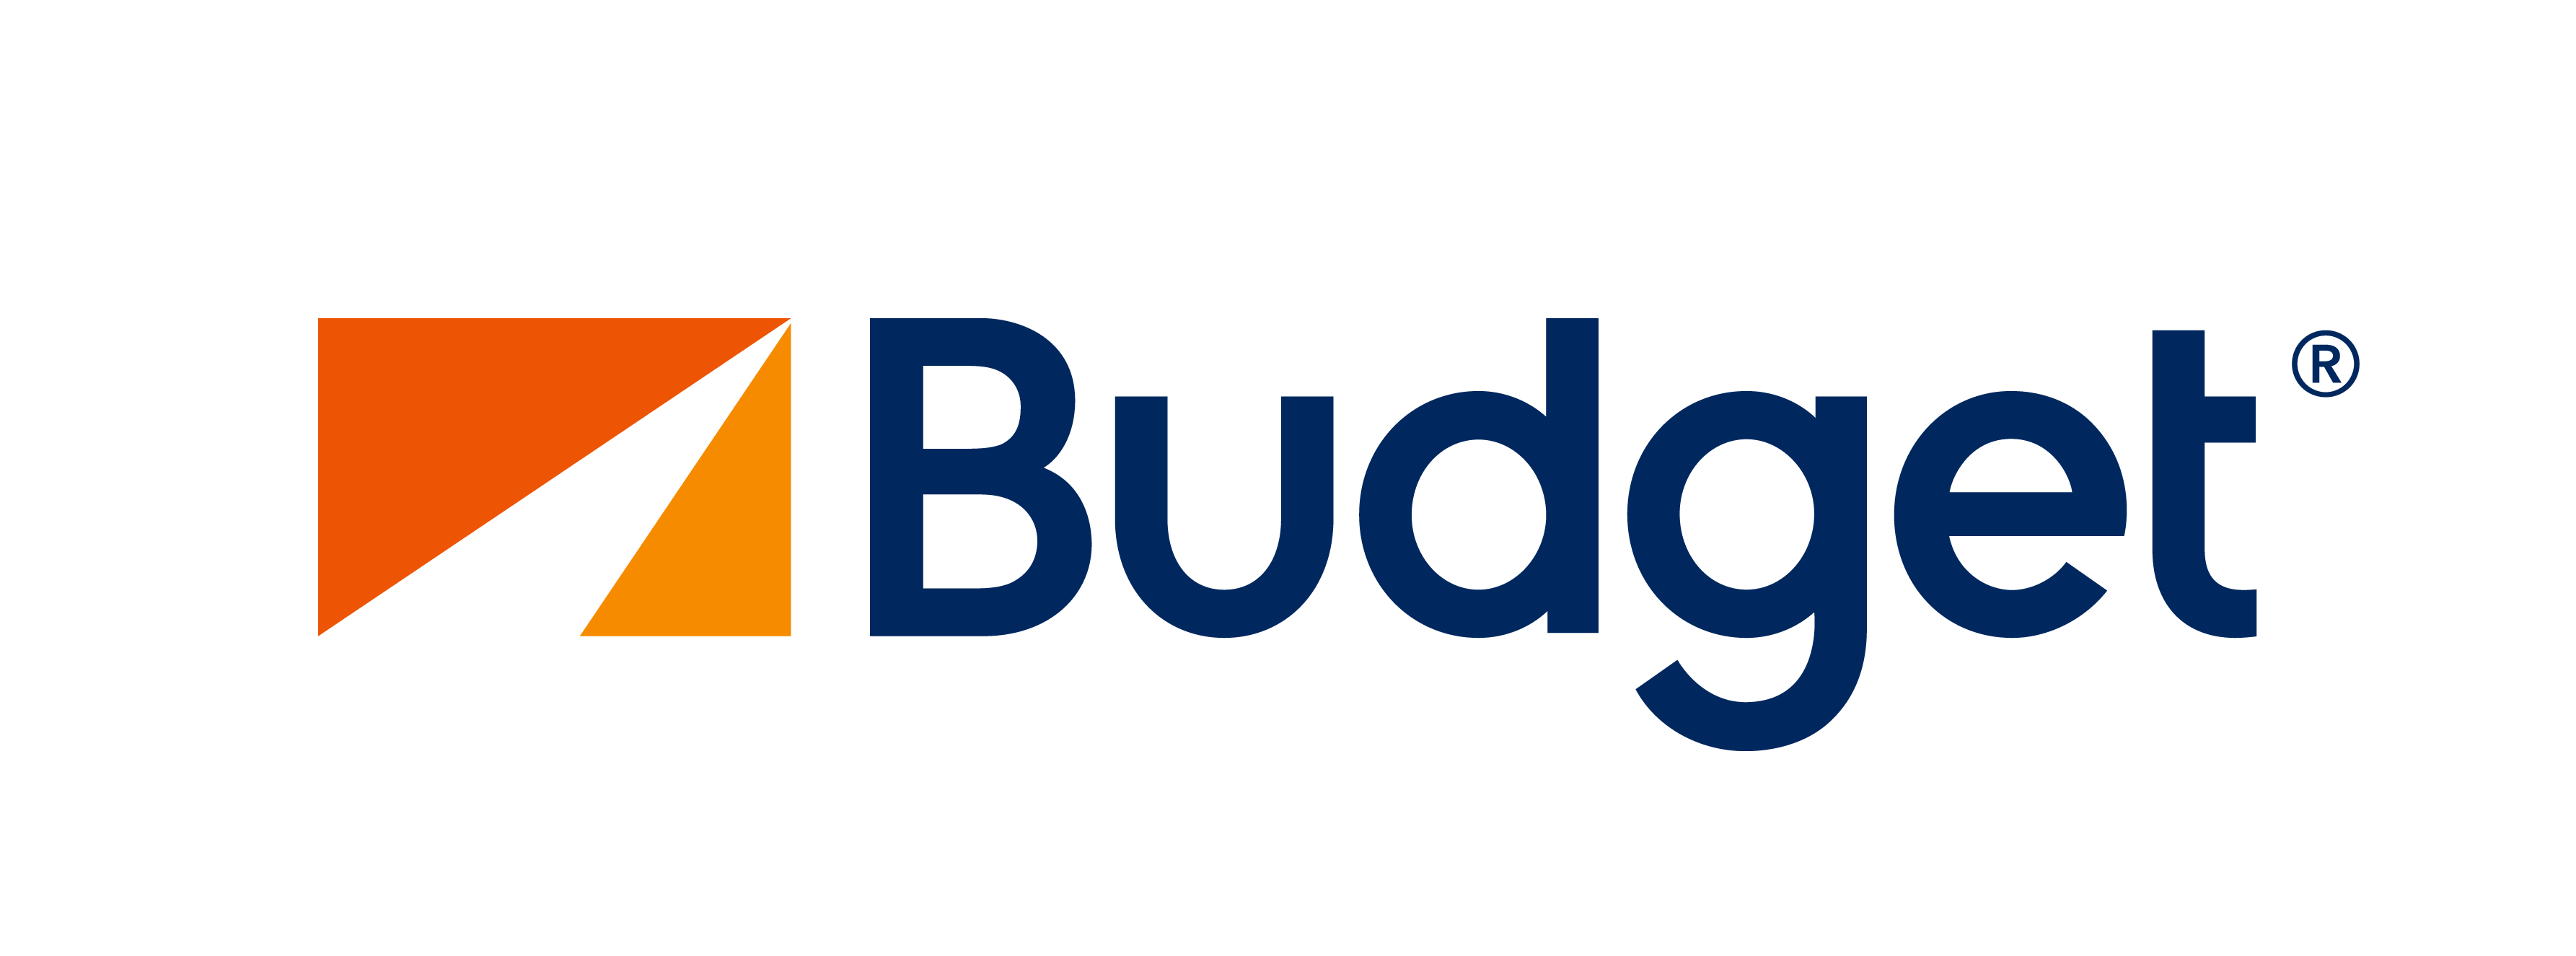 Budget Logo - Budget Logo transparent PNG - StickPNG